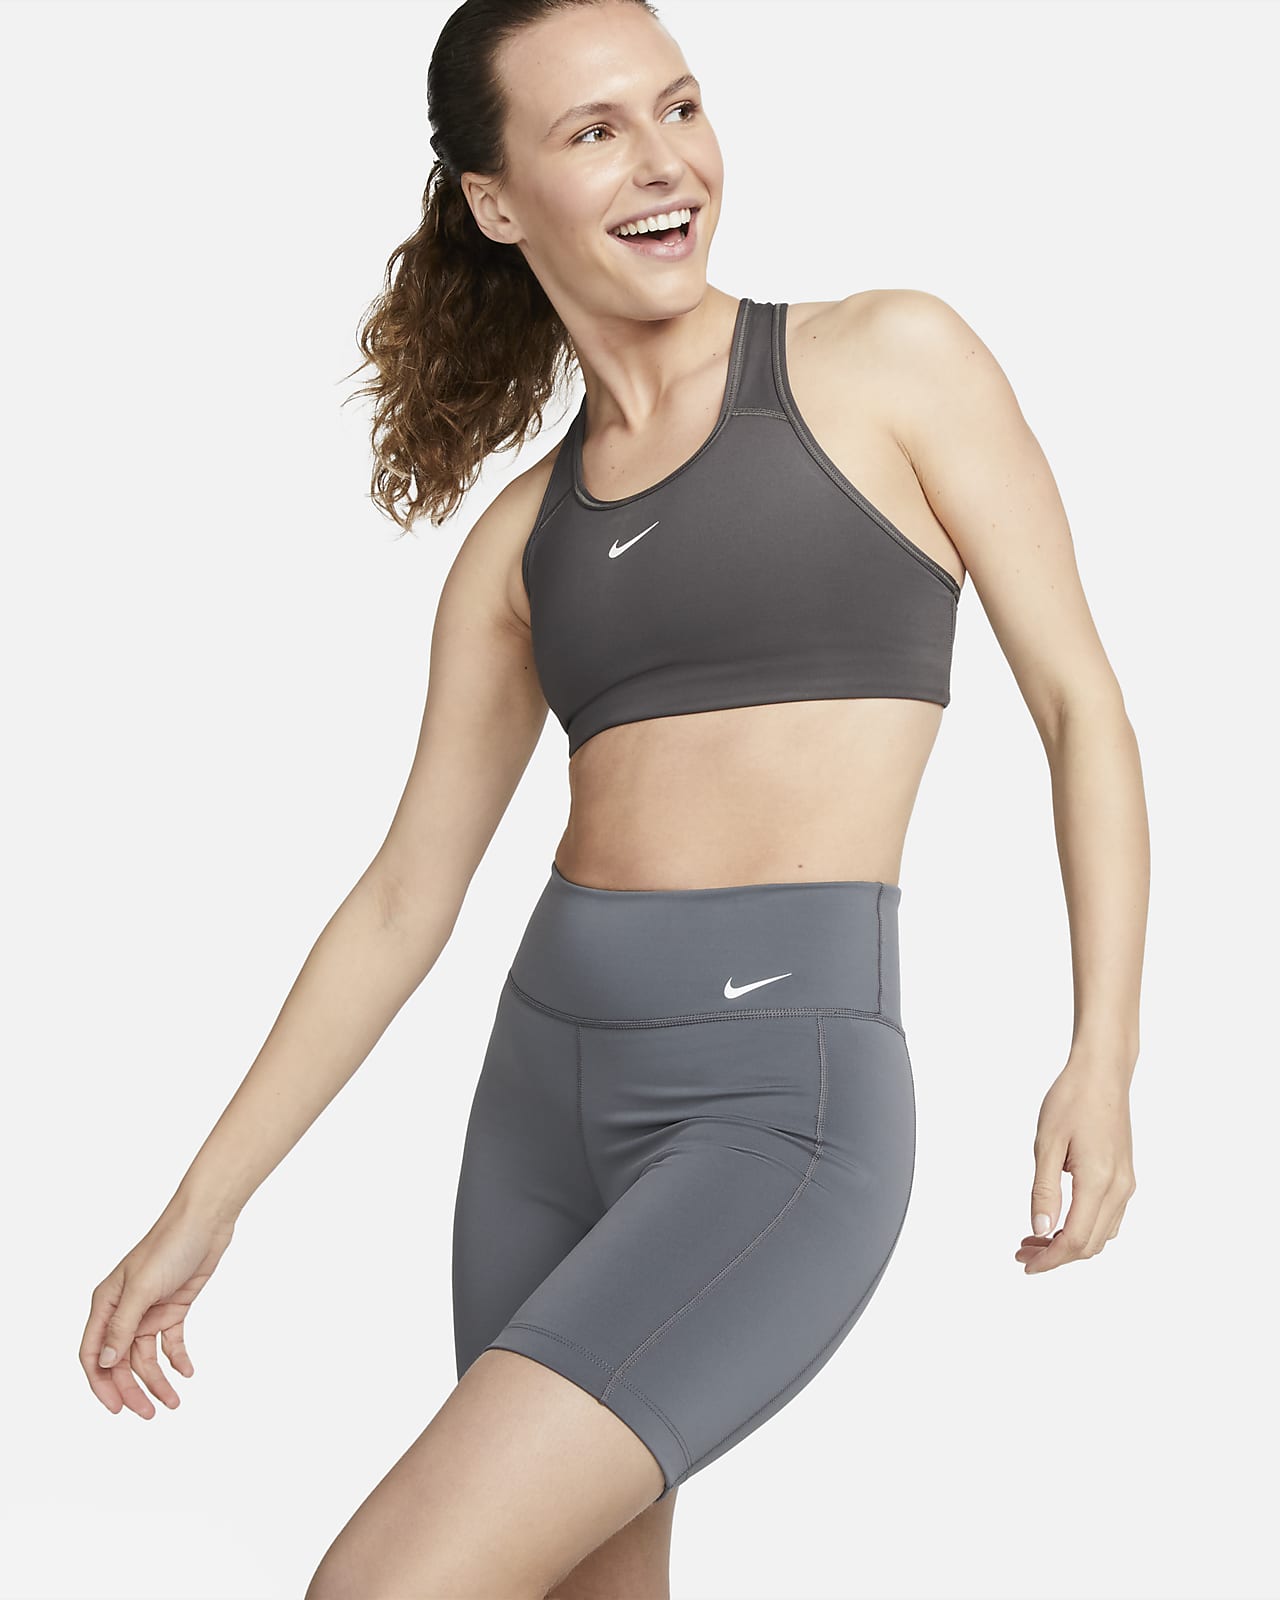 Γυναικείο σορτς περιόδου για ποδηλασία μεσαίου ύψους Nike One Leak Protection 18 cm